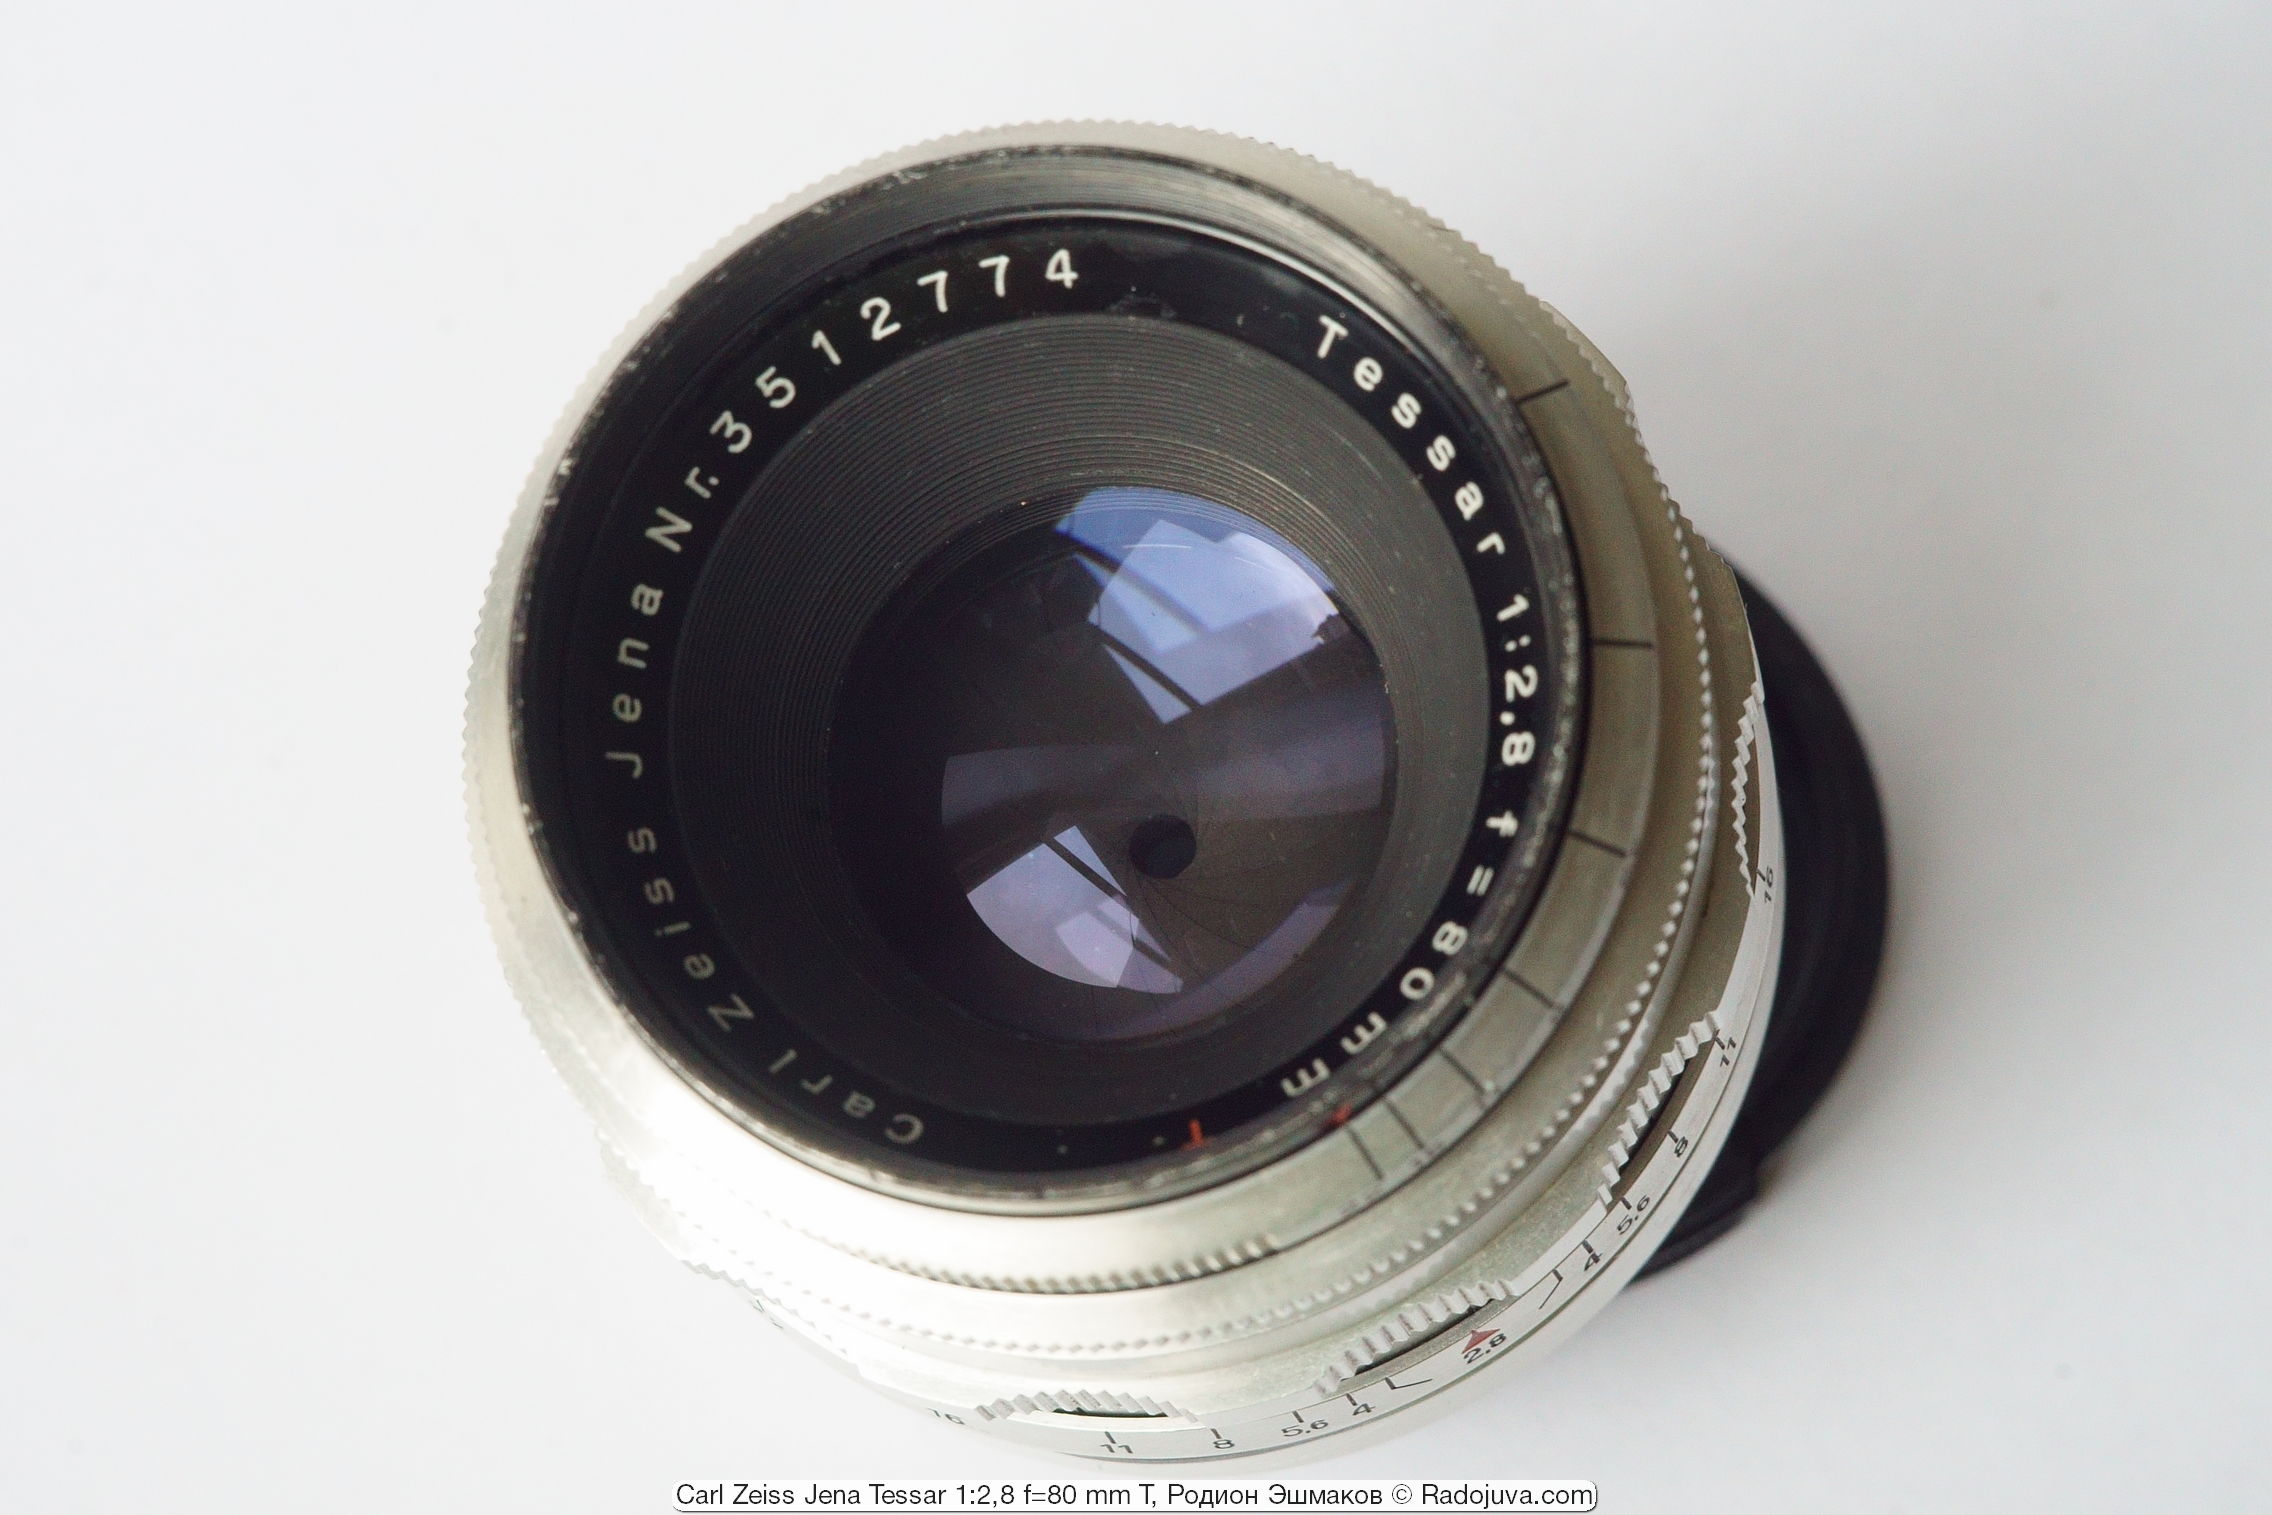 Las lentes de la lente Tessar 80/2.8 emiten un color azul violeta.